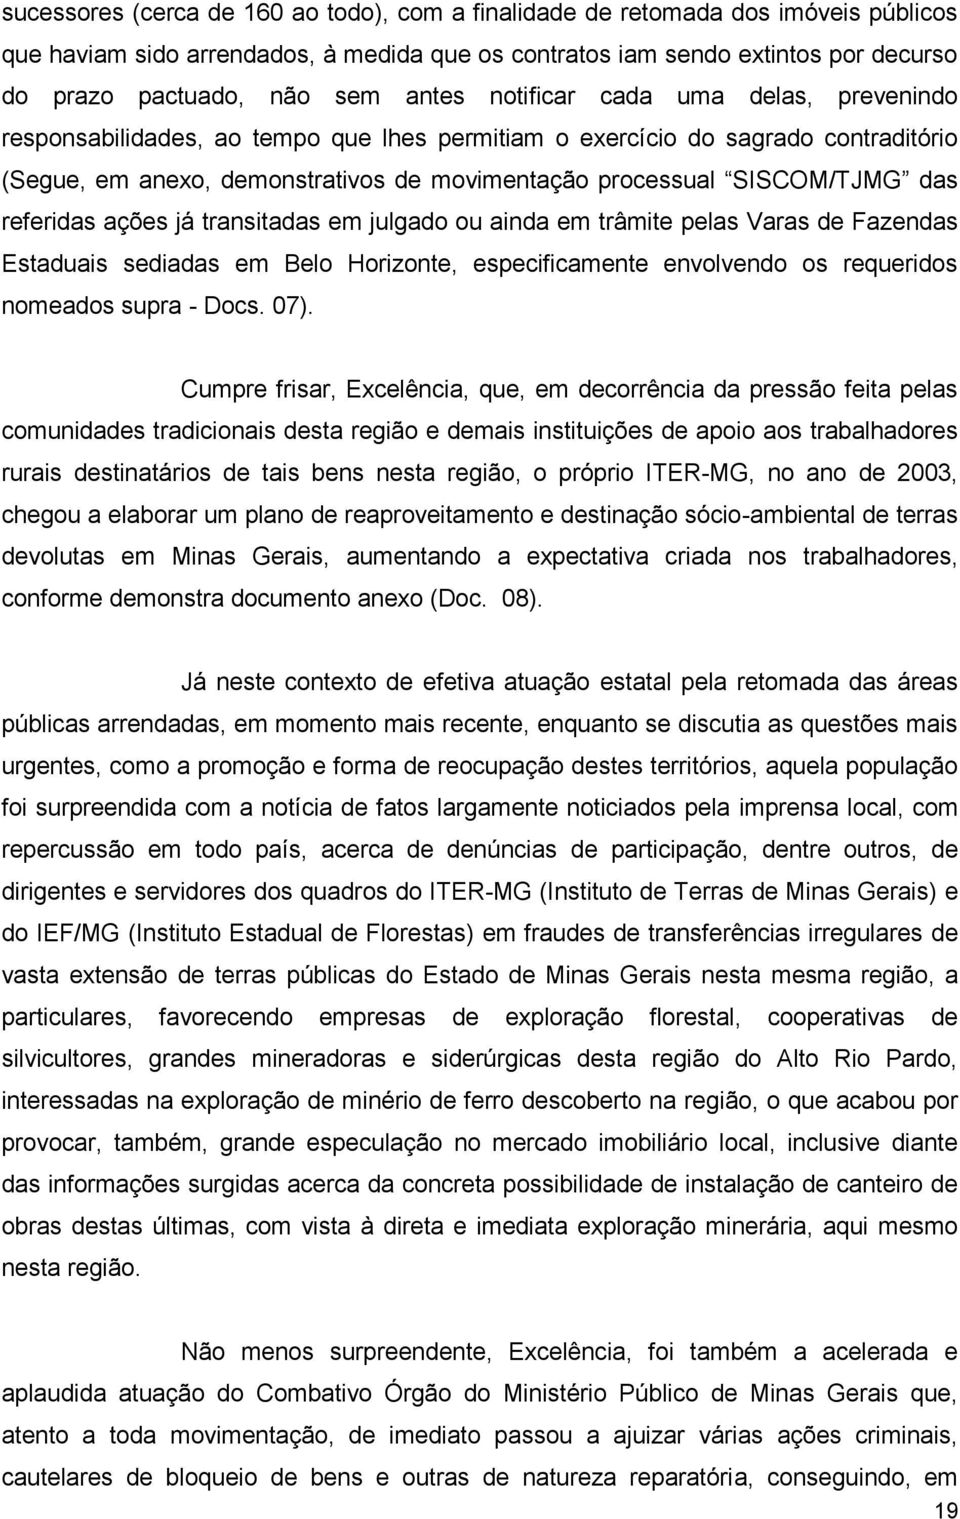 das referidas ações já transitadas em julgado ou ainda em trâmite pelas Varas de Fazendas Estaduais sediadas em Belo Horizonte, especificamente envolvendo os requeridos nomeados supra - Docs. 07).